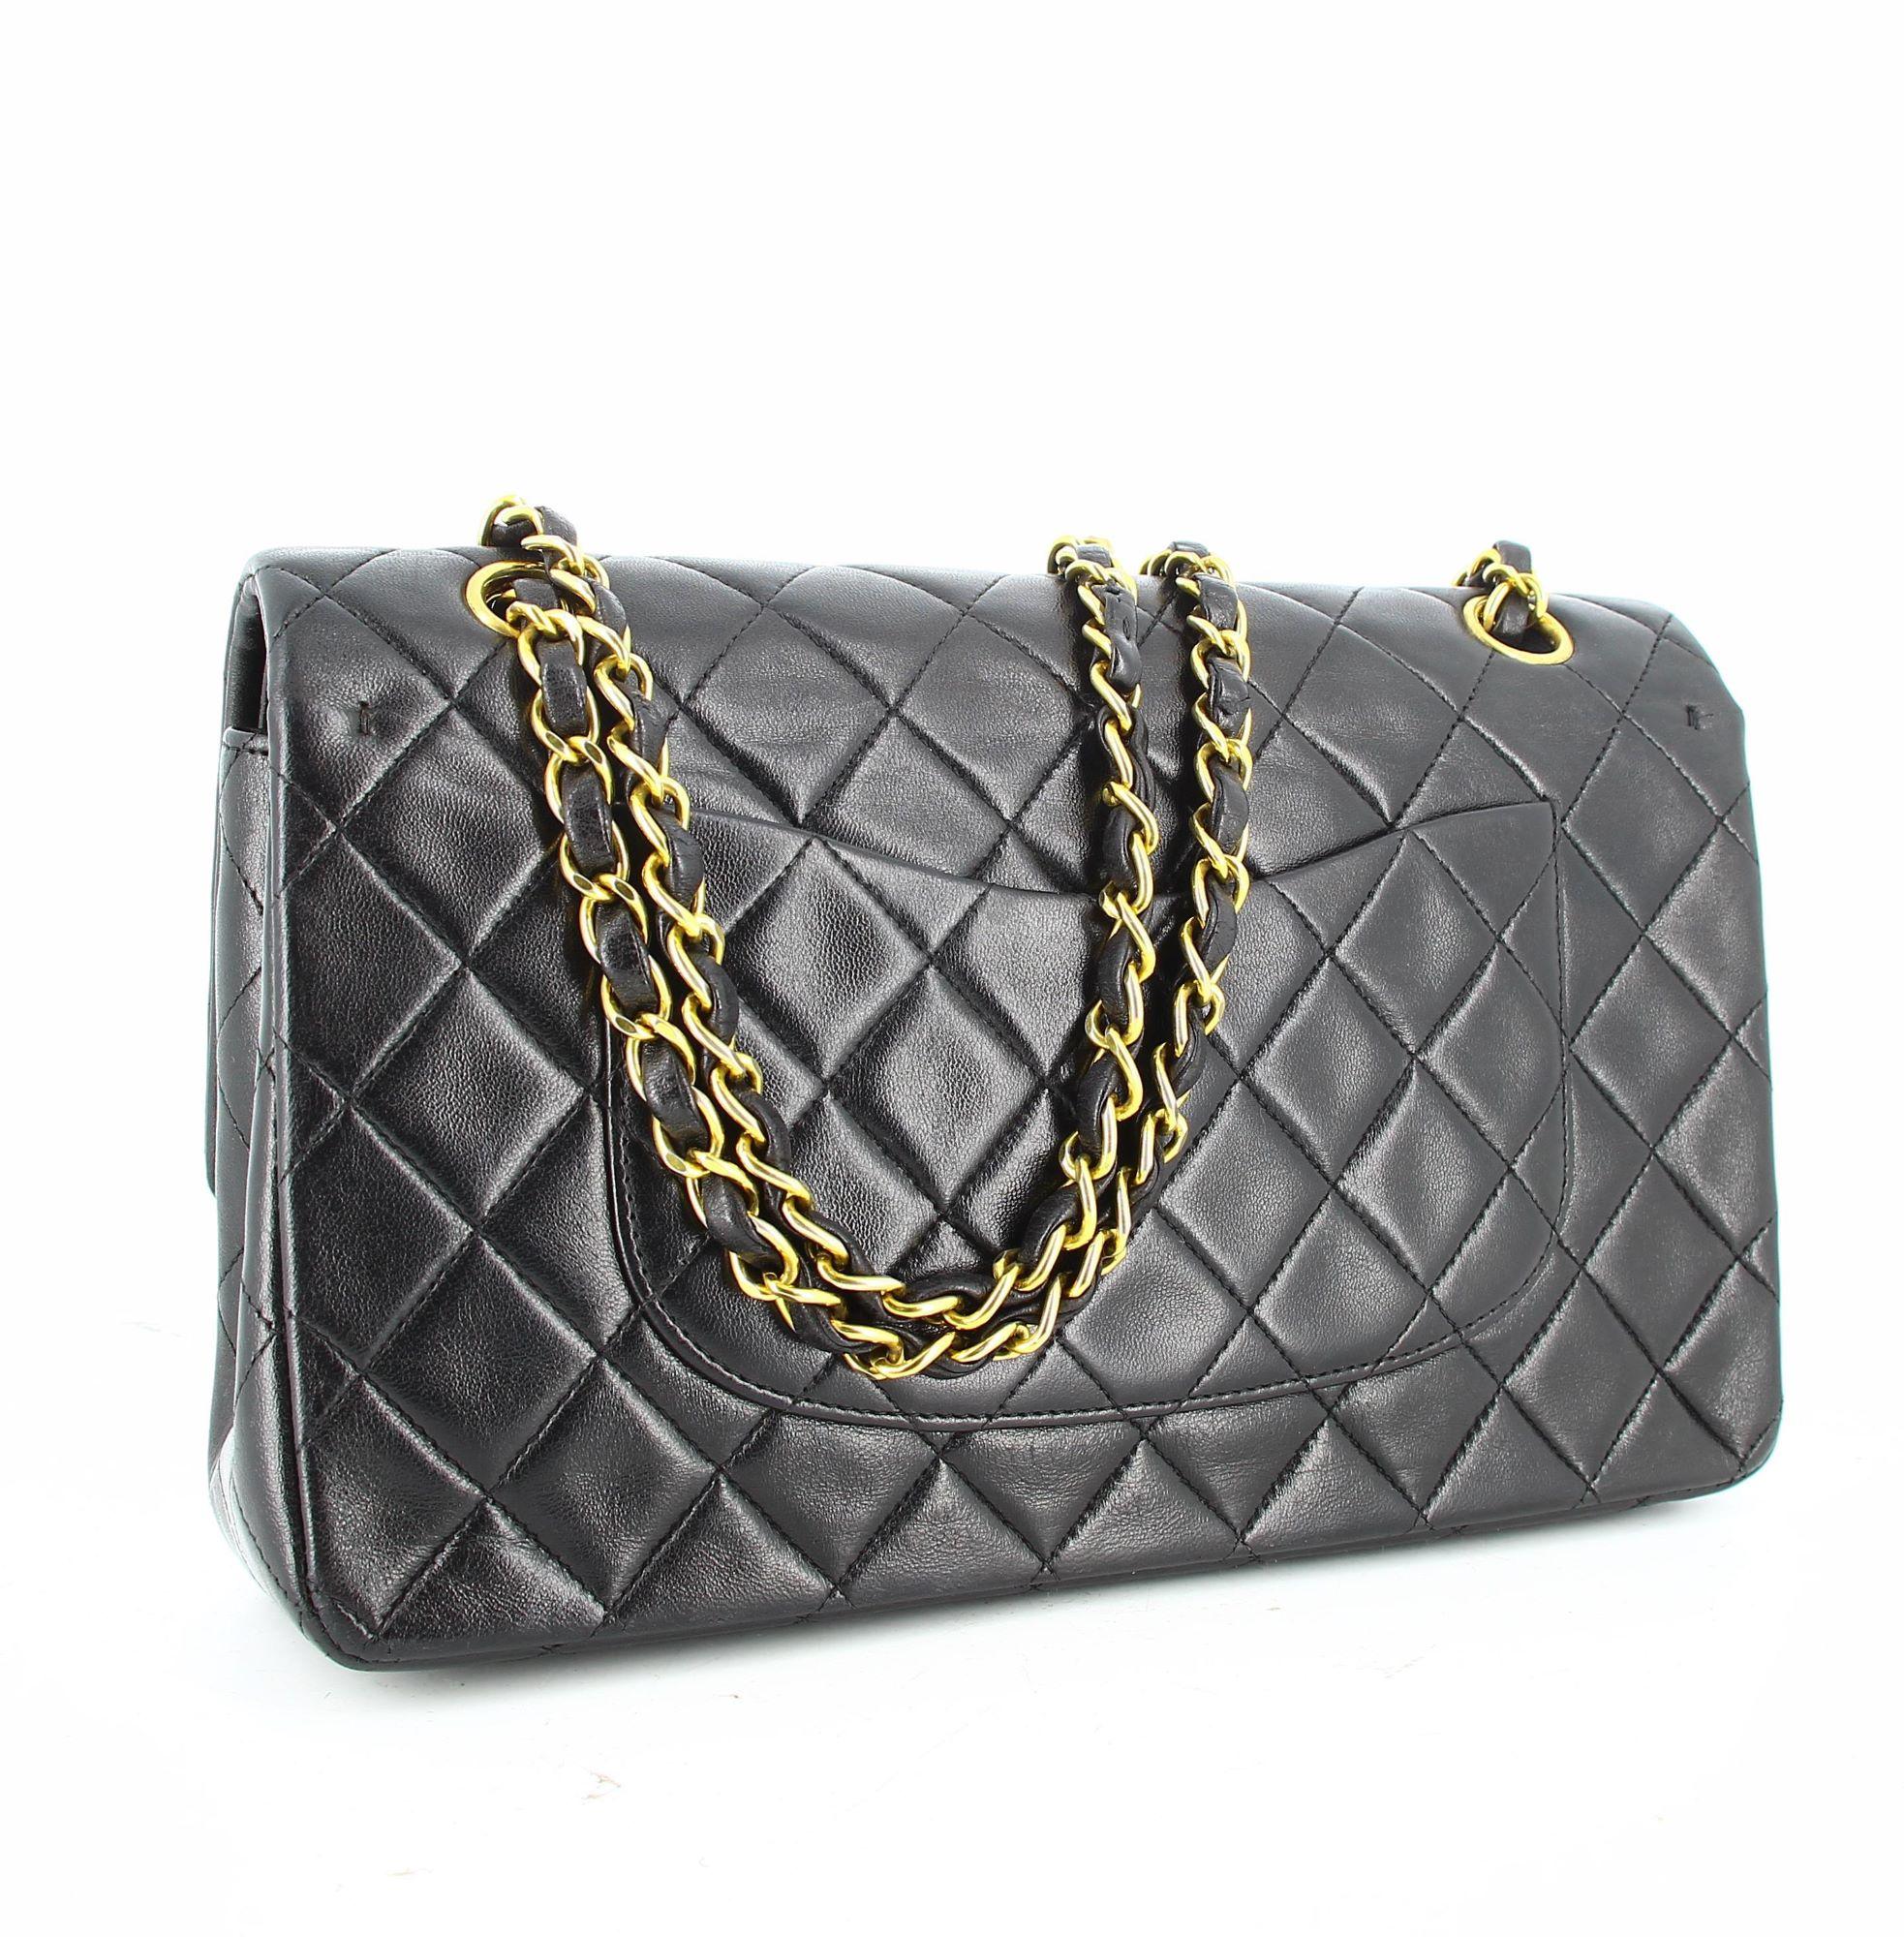 Women's or Men's Chanel Black Timeless Bag